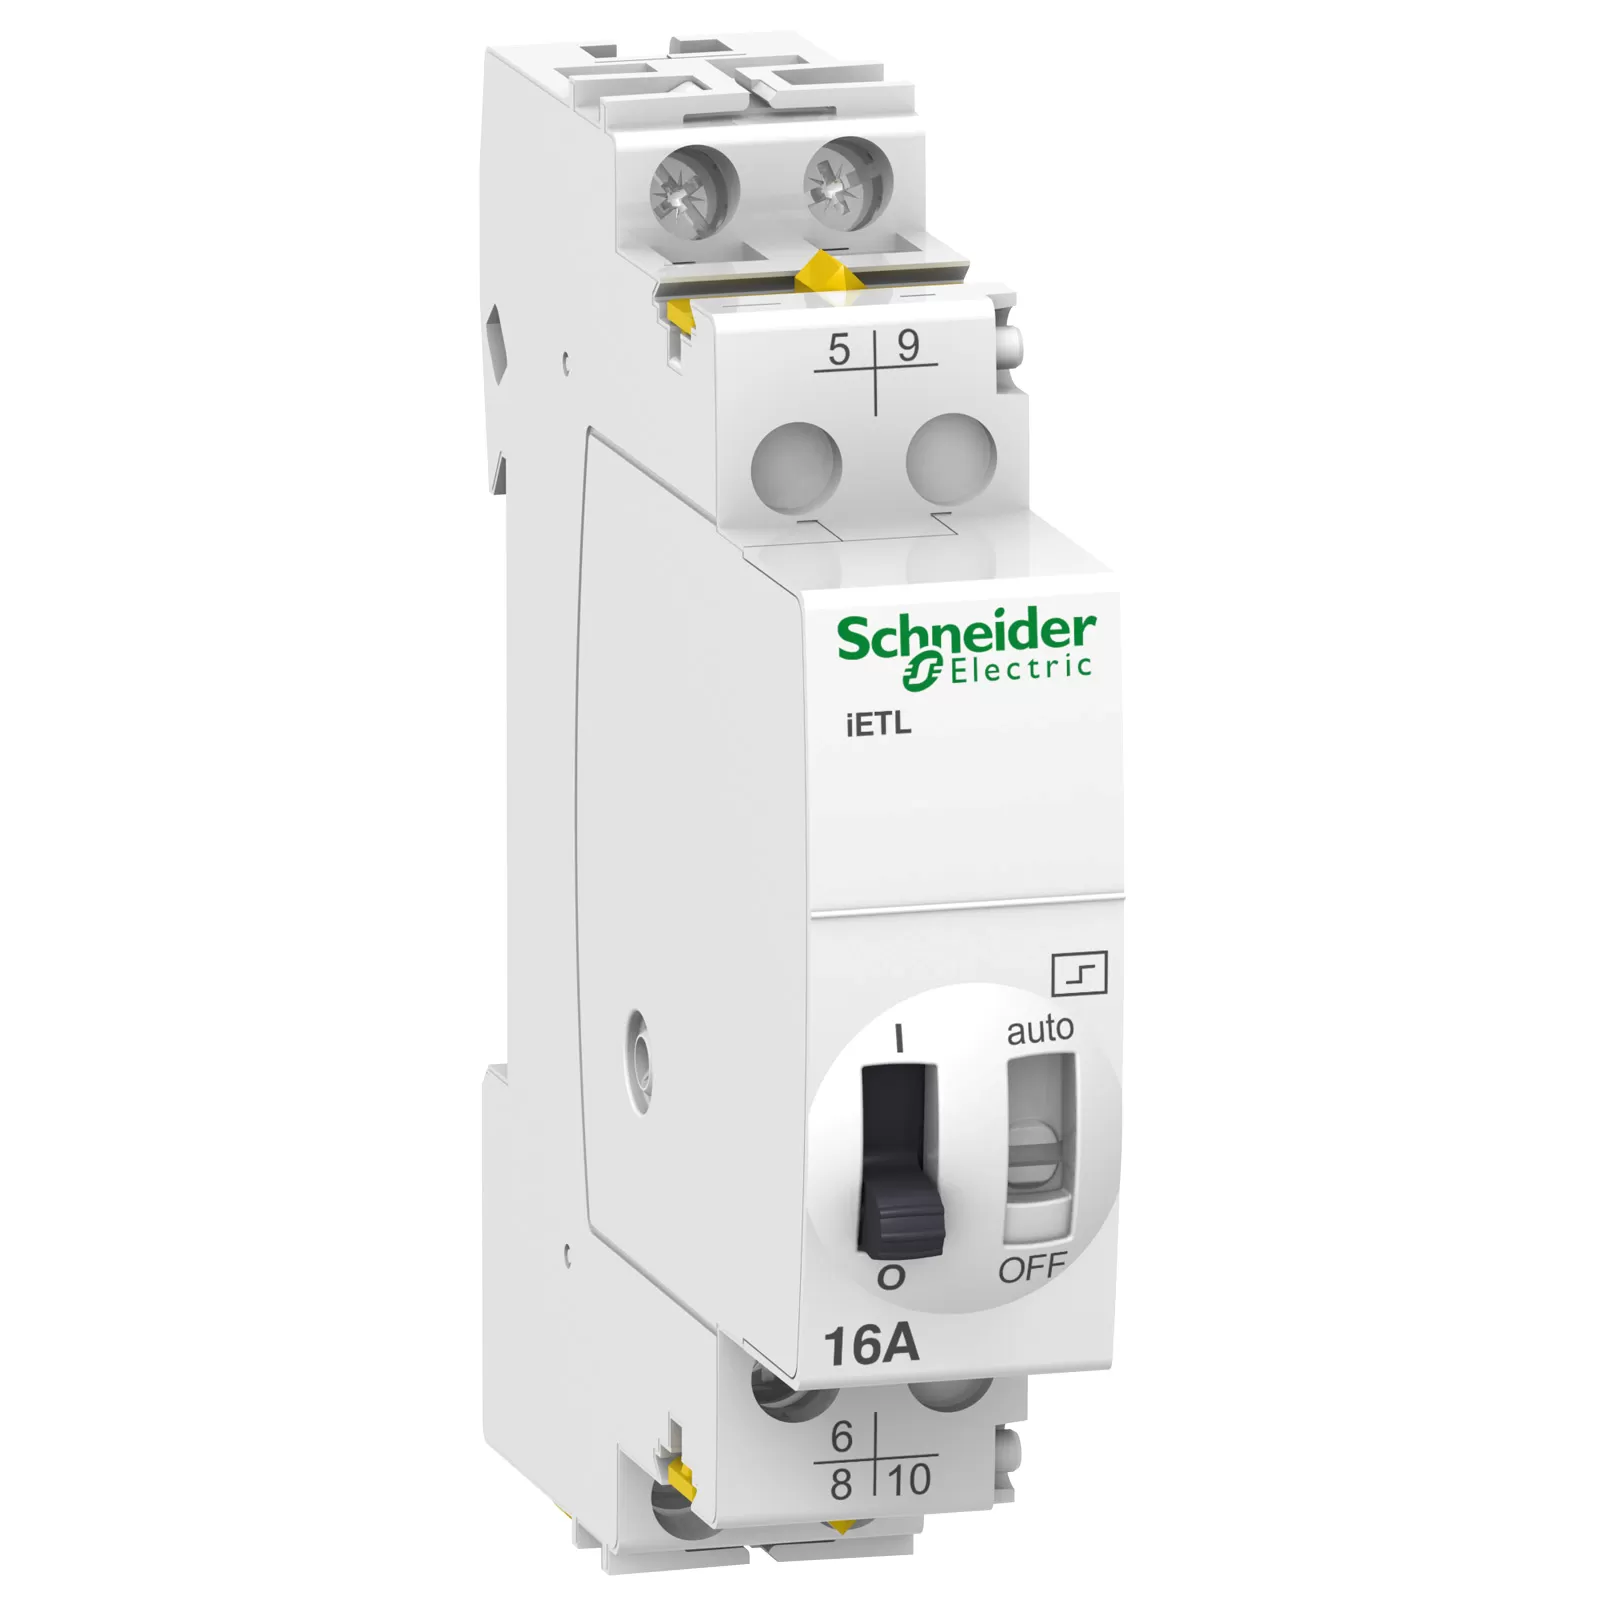 Schneider Electric Erweiterung iETL iTL 16- 2P, 1W+1S -16A, Spule 110VDC, 230-240V AC 50/60Hz A9C32816